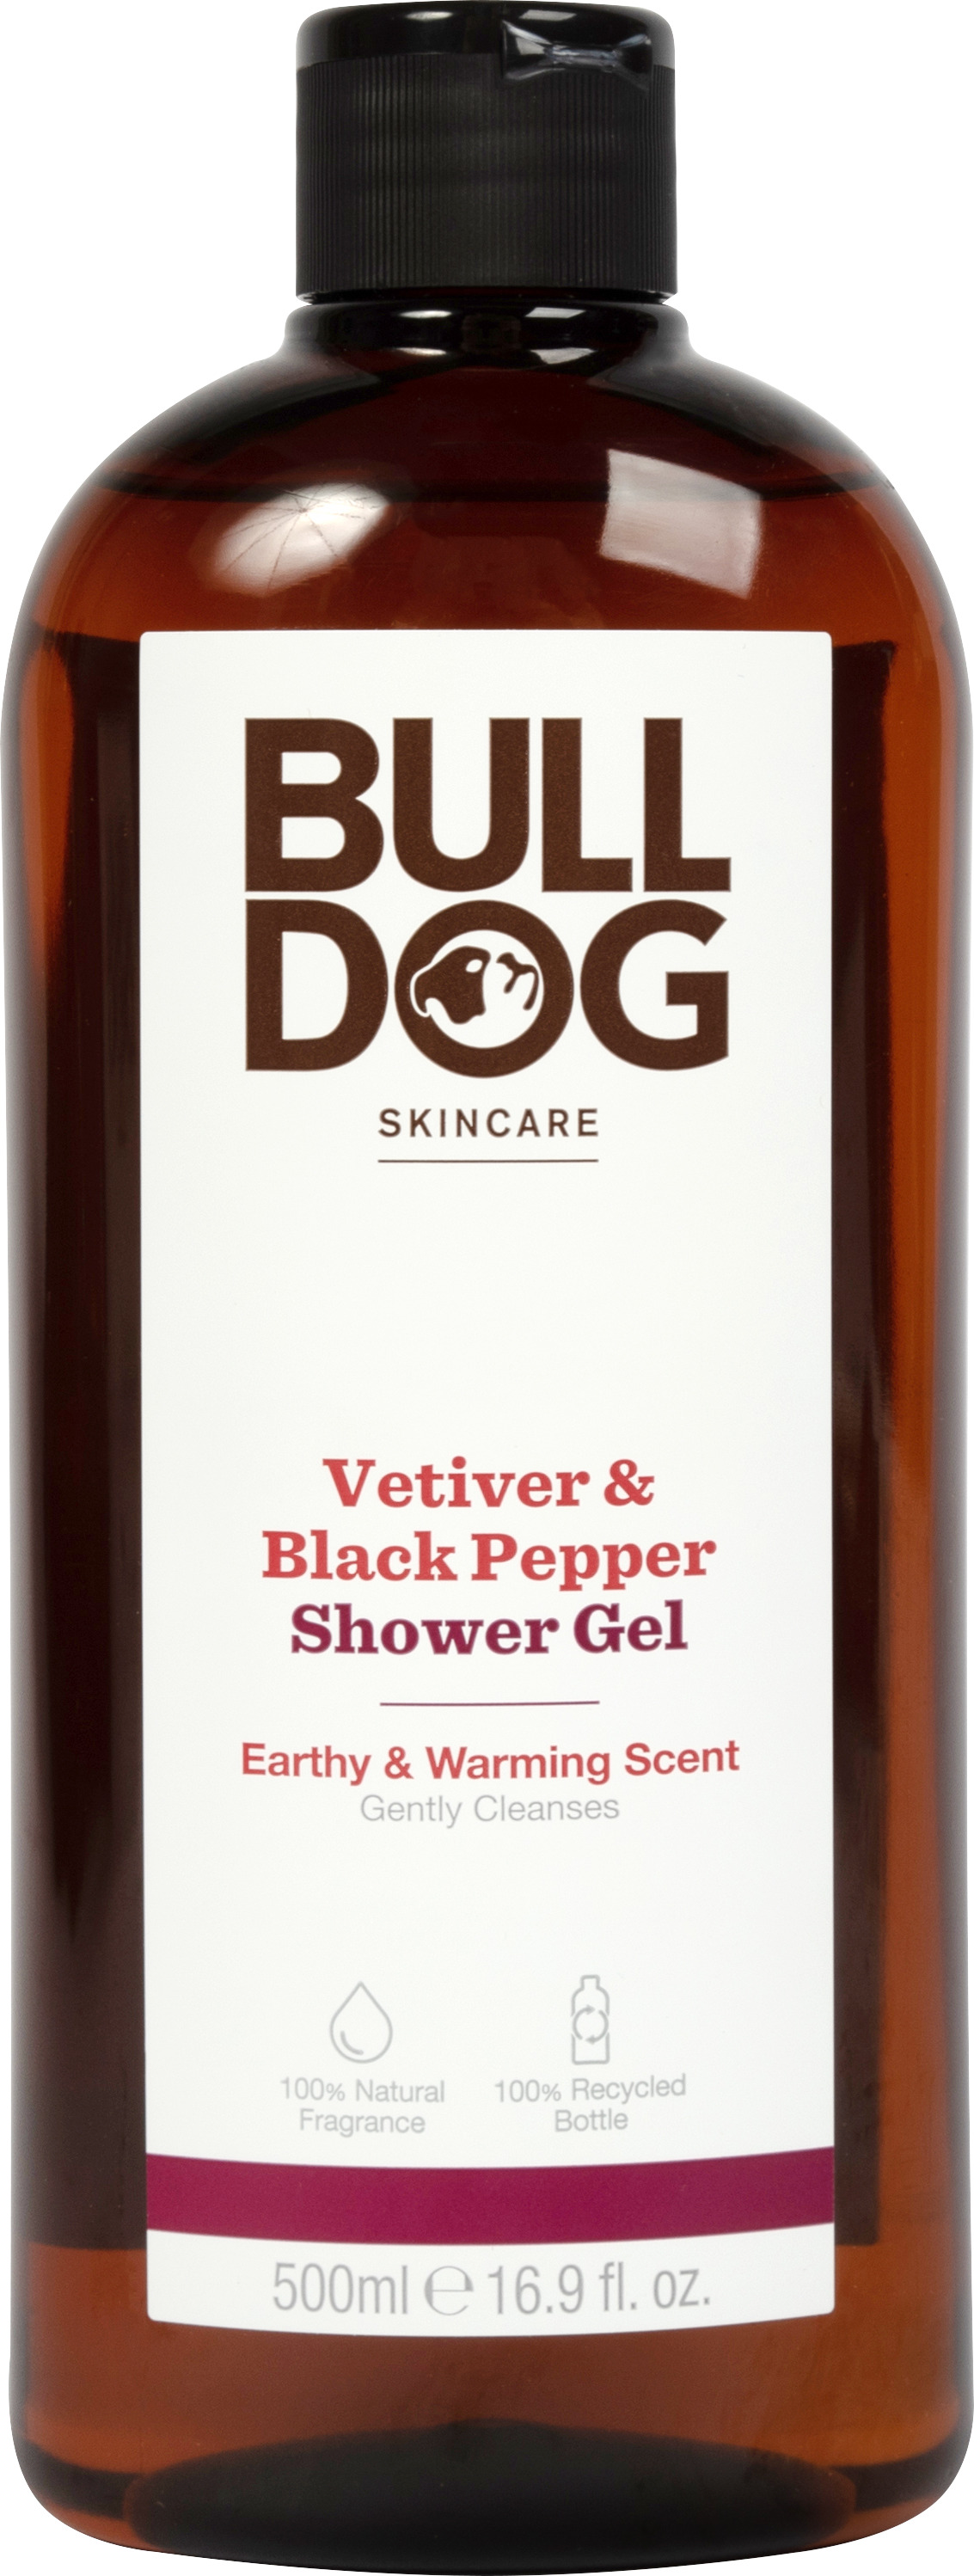 Bulldog Vetiver & Black Pepper Shower Gel 500 ml